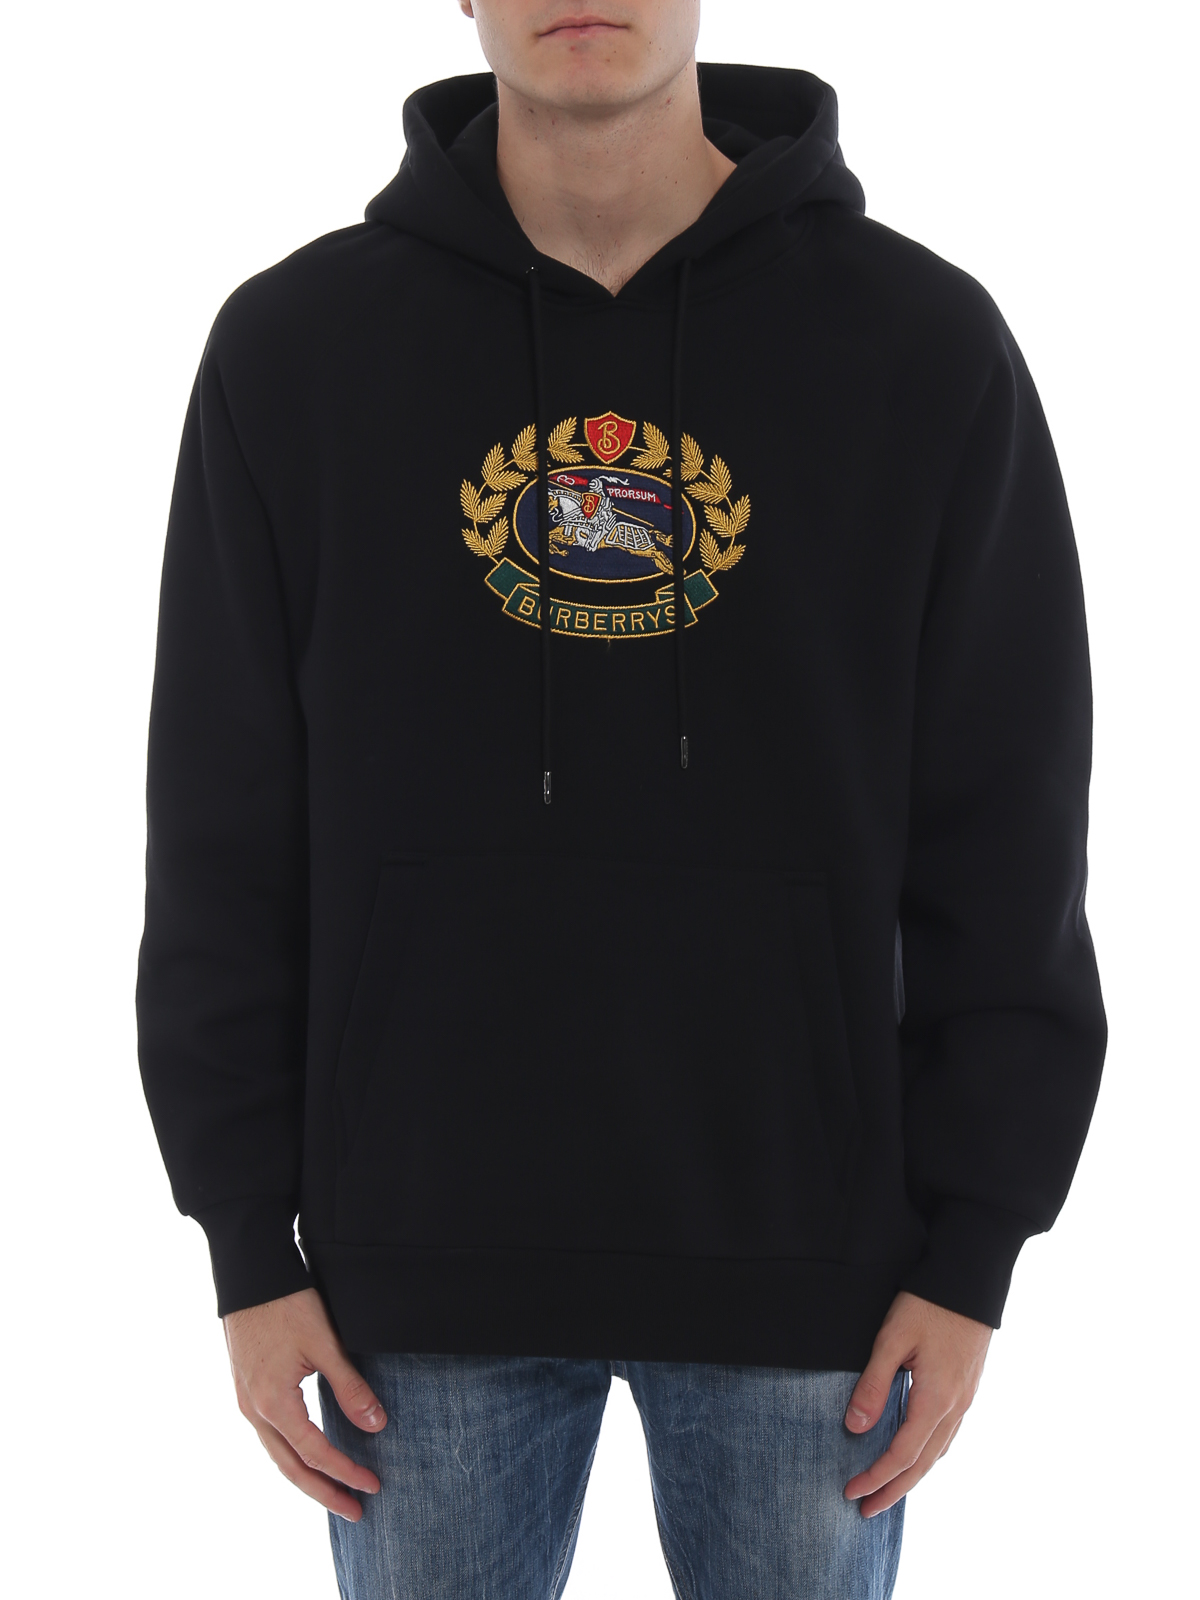 burberry hoodie mens 2013